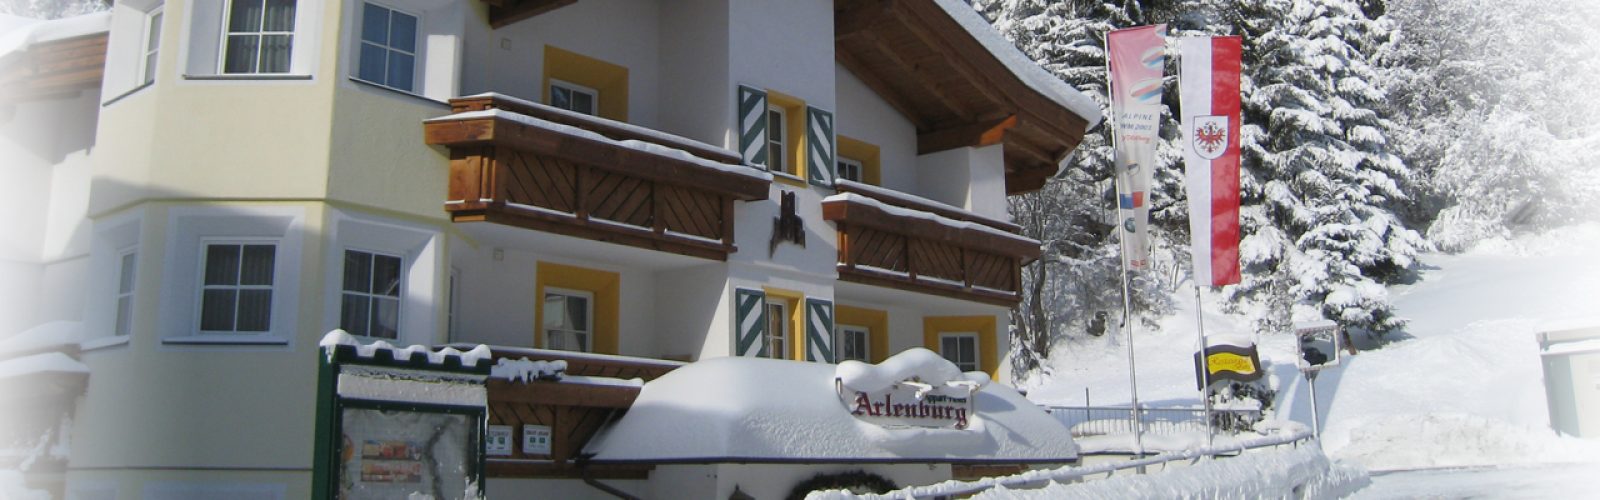 Hotel Arlenburg, St. Anton am Arlberg,www.aktivostrig.dk